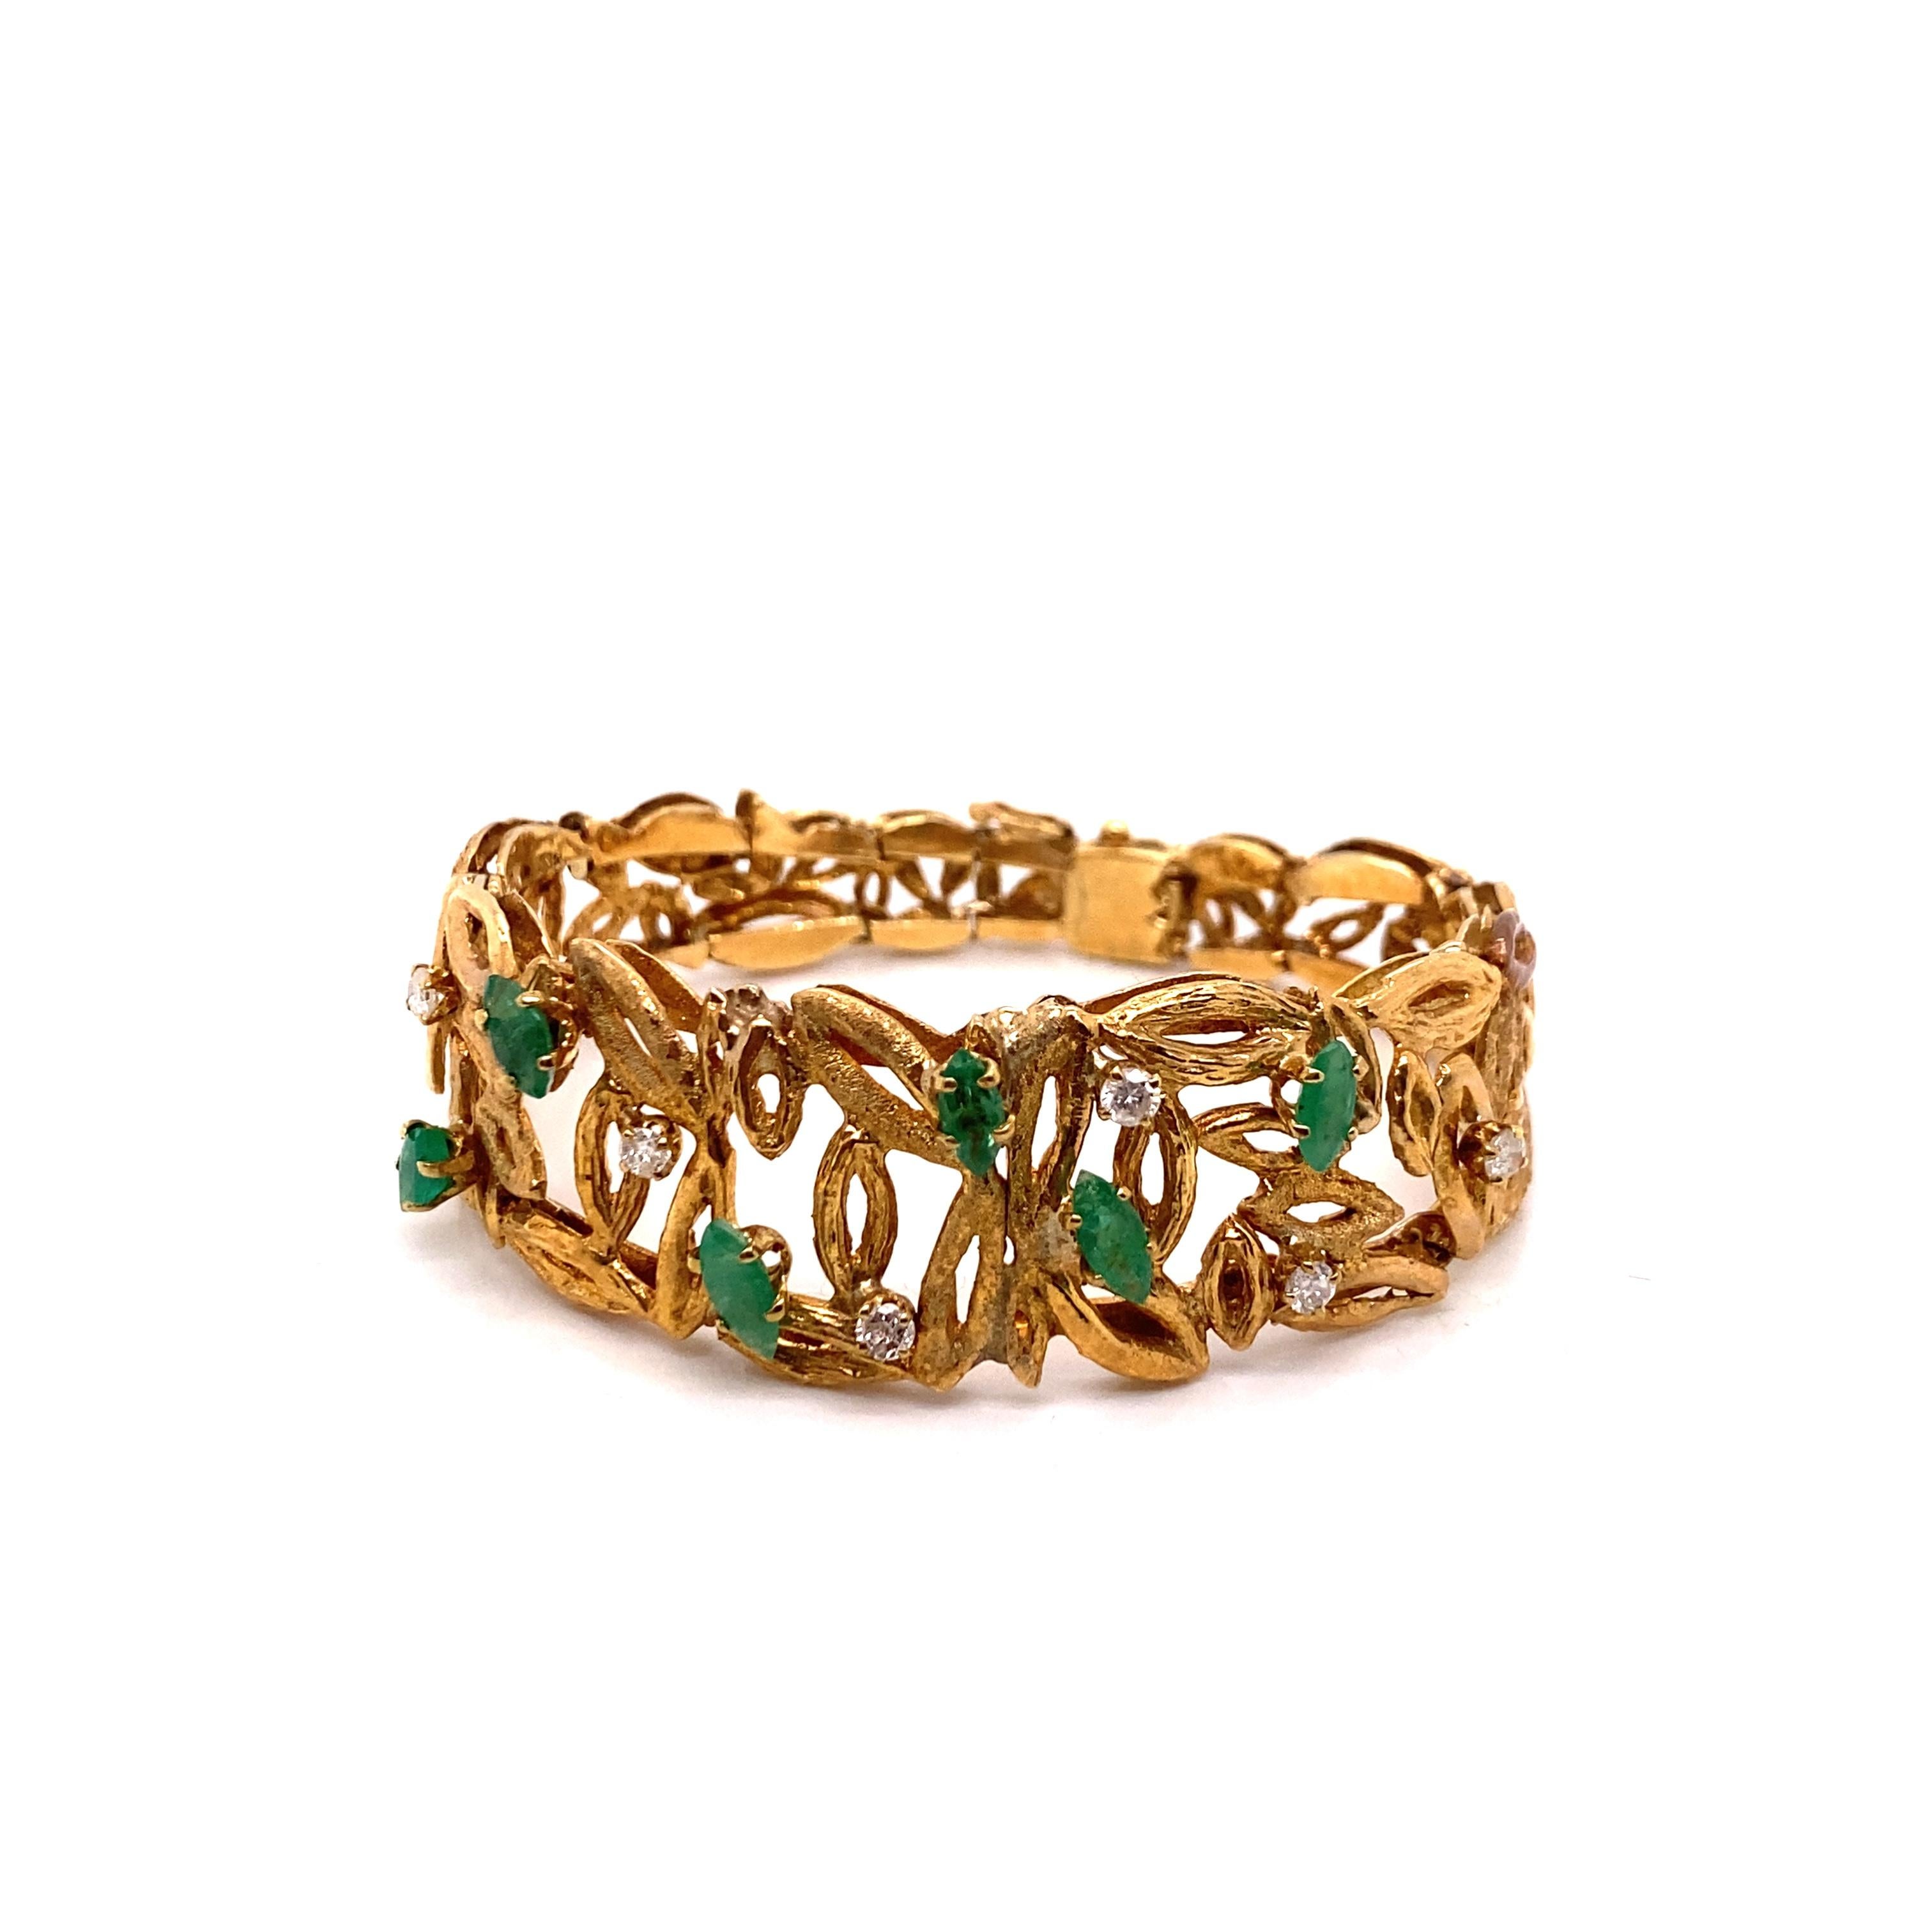 Vintage 1980's 14K Gelbgold-Armband mit Smaragden und Diamanten - Das Armband enthält 6 marquise Smaragde und 6 runde Diamanten. Die Größe der Smaragde reicht von 6 x 3 mm bis 8 x 3,5 mm. Die Diamanten wiegen ca. 0,50 ct mit der Farbe G - H und der